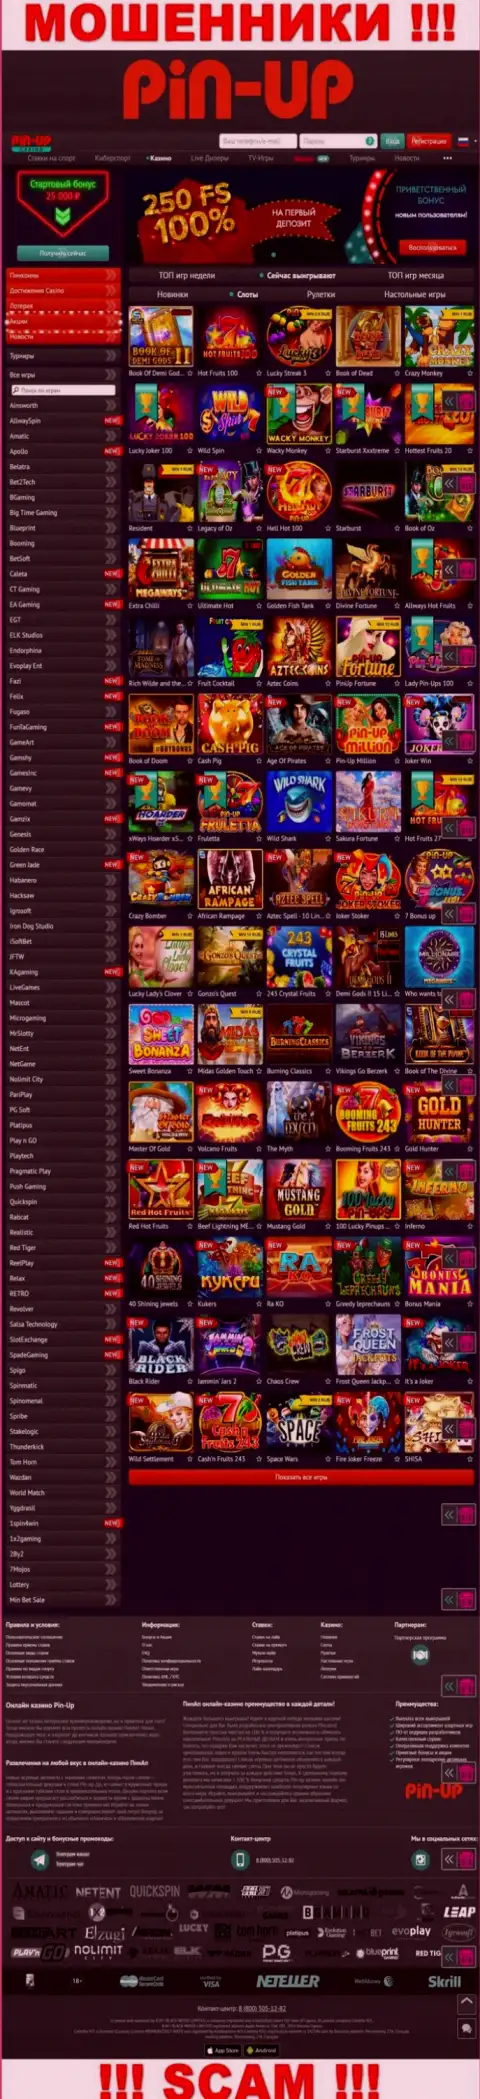 Pin-Up Casino - это официальный сайт мошенников PinUpCasino